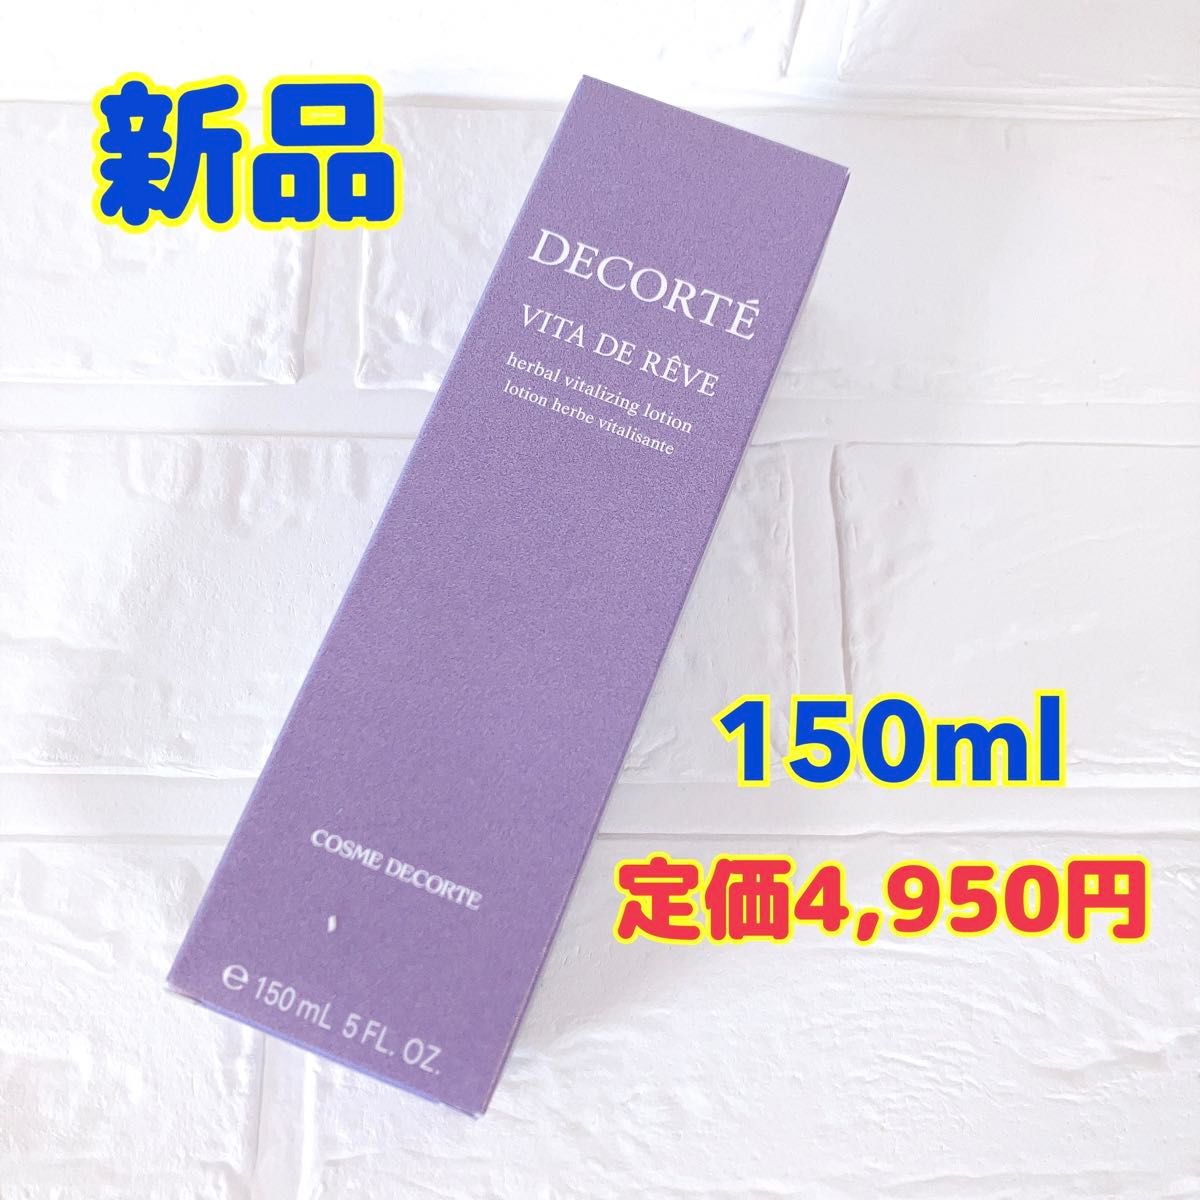 新品 コスメデコルテ ヴィタドレーブ 150ml コーセー KOSE ビタドレーブ ヴィタドレープ 化粧水 紫